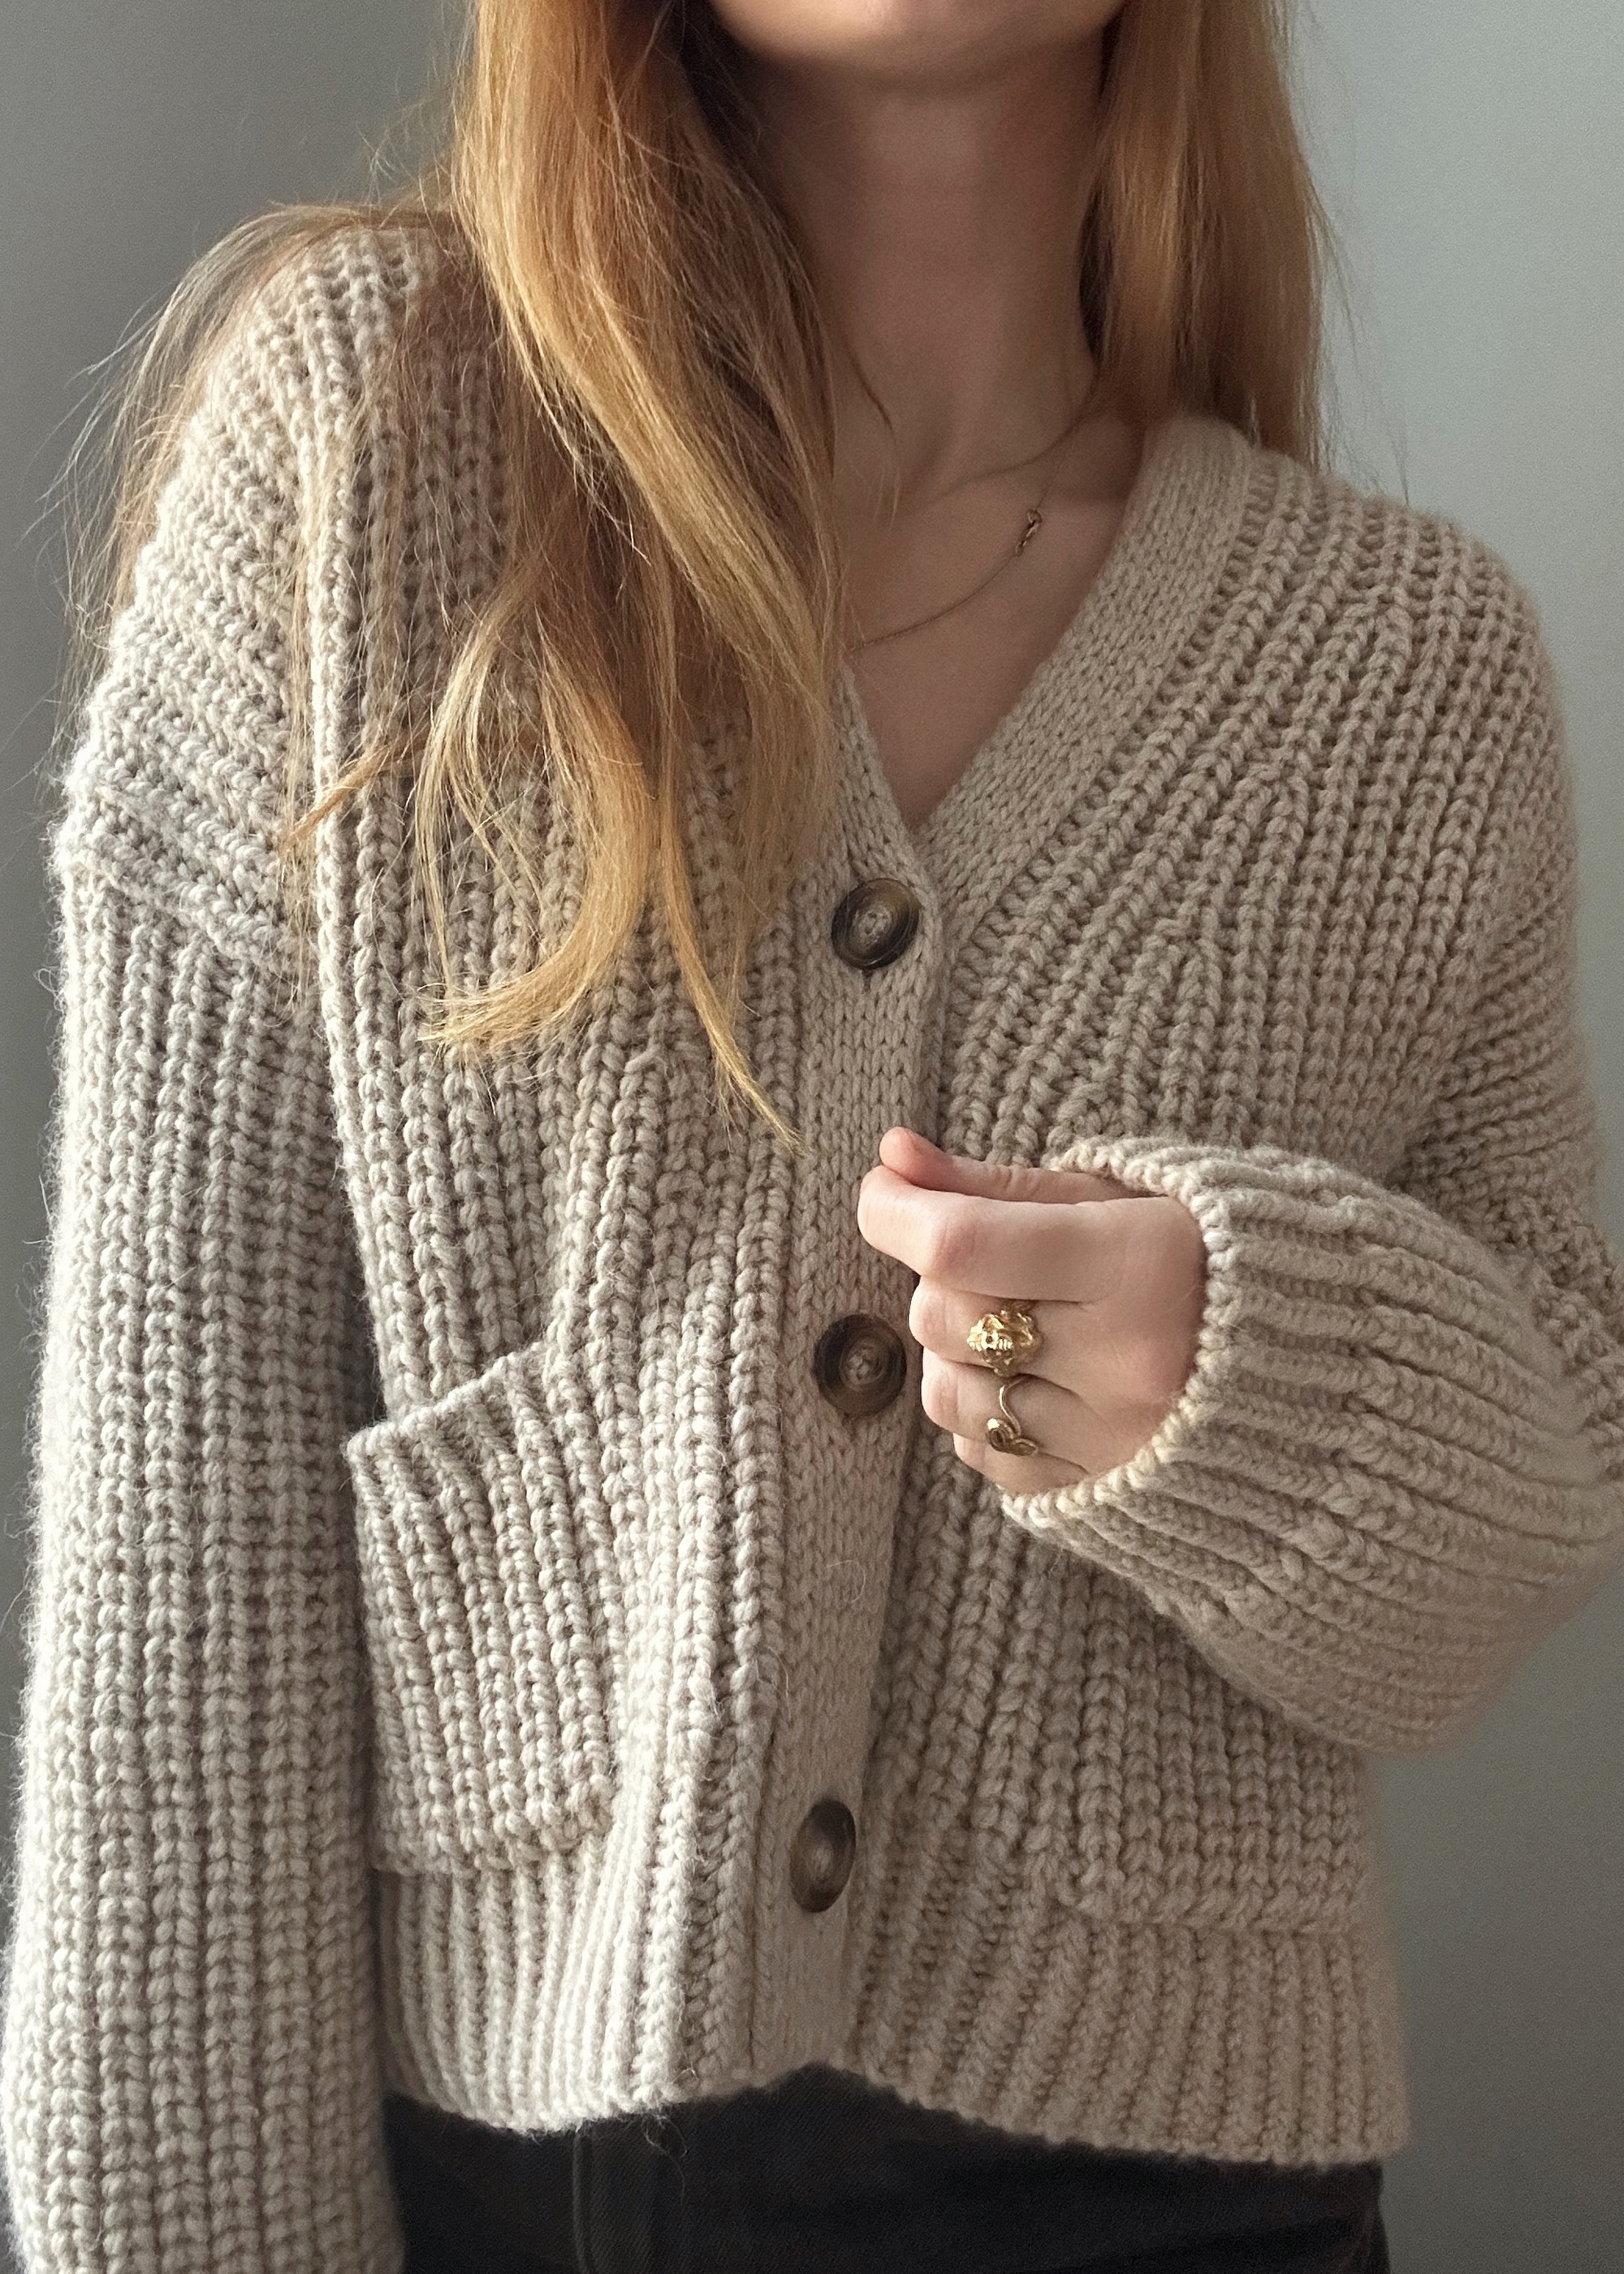 AIAYU YARN - Viveka Cardigan - knitting pattern by My Favourite Things Knitwear